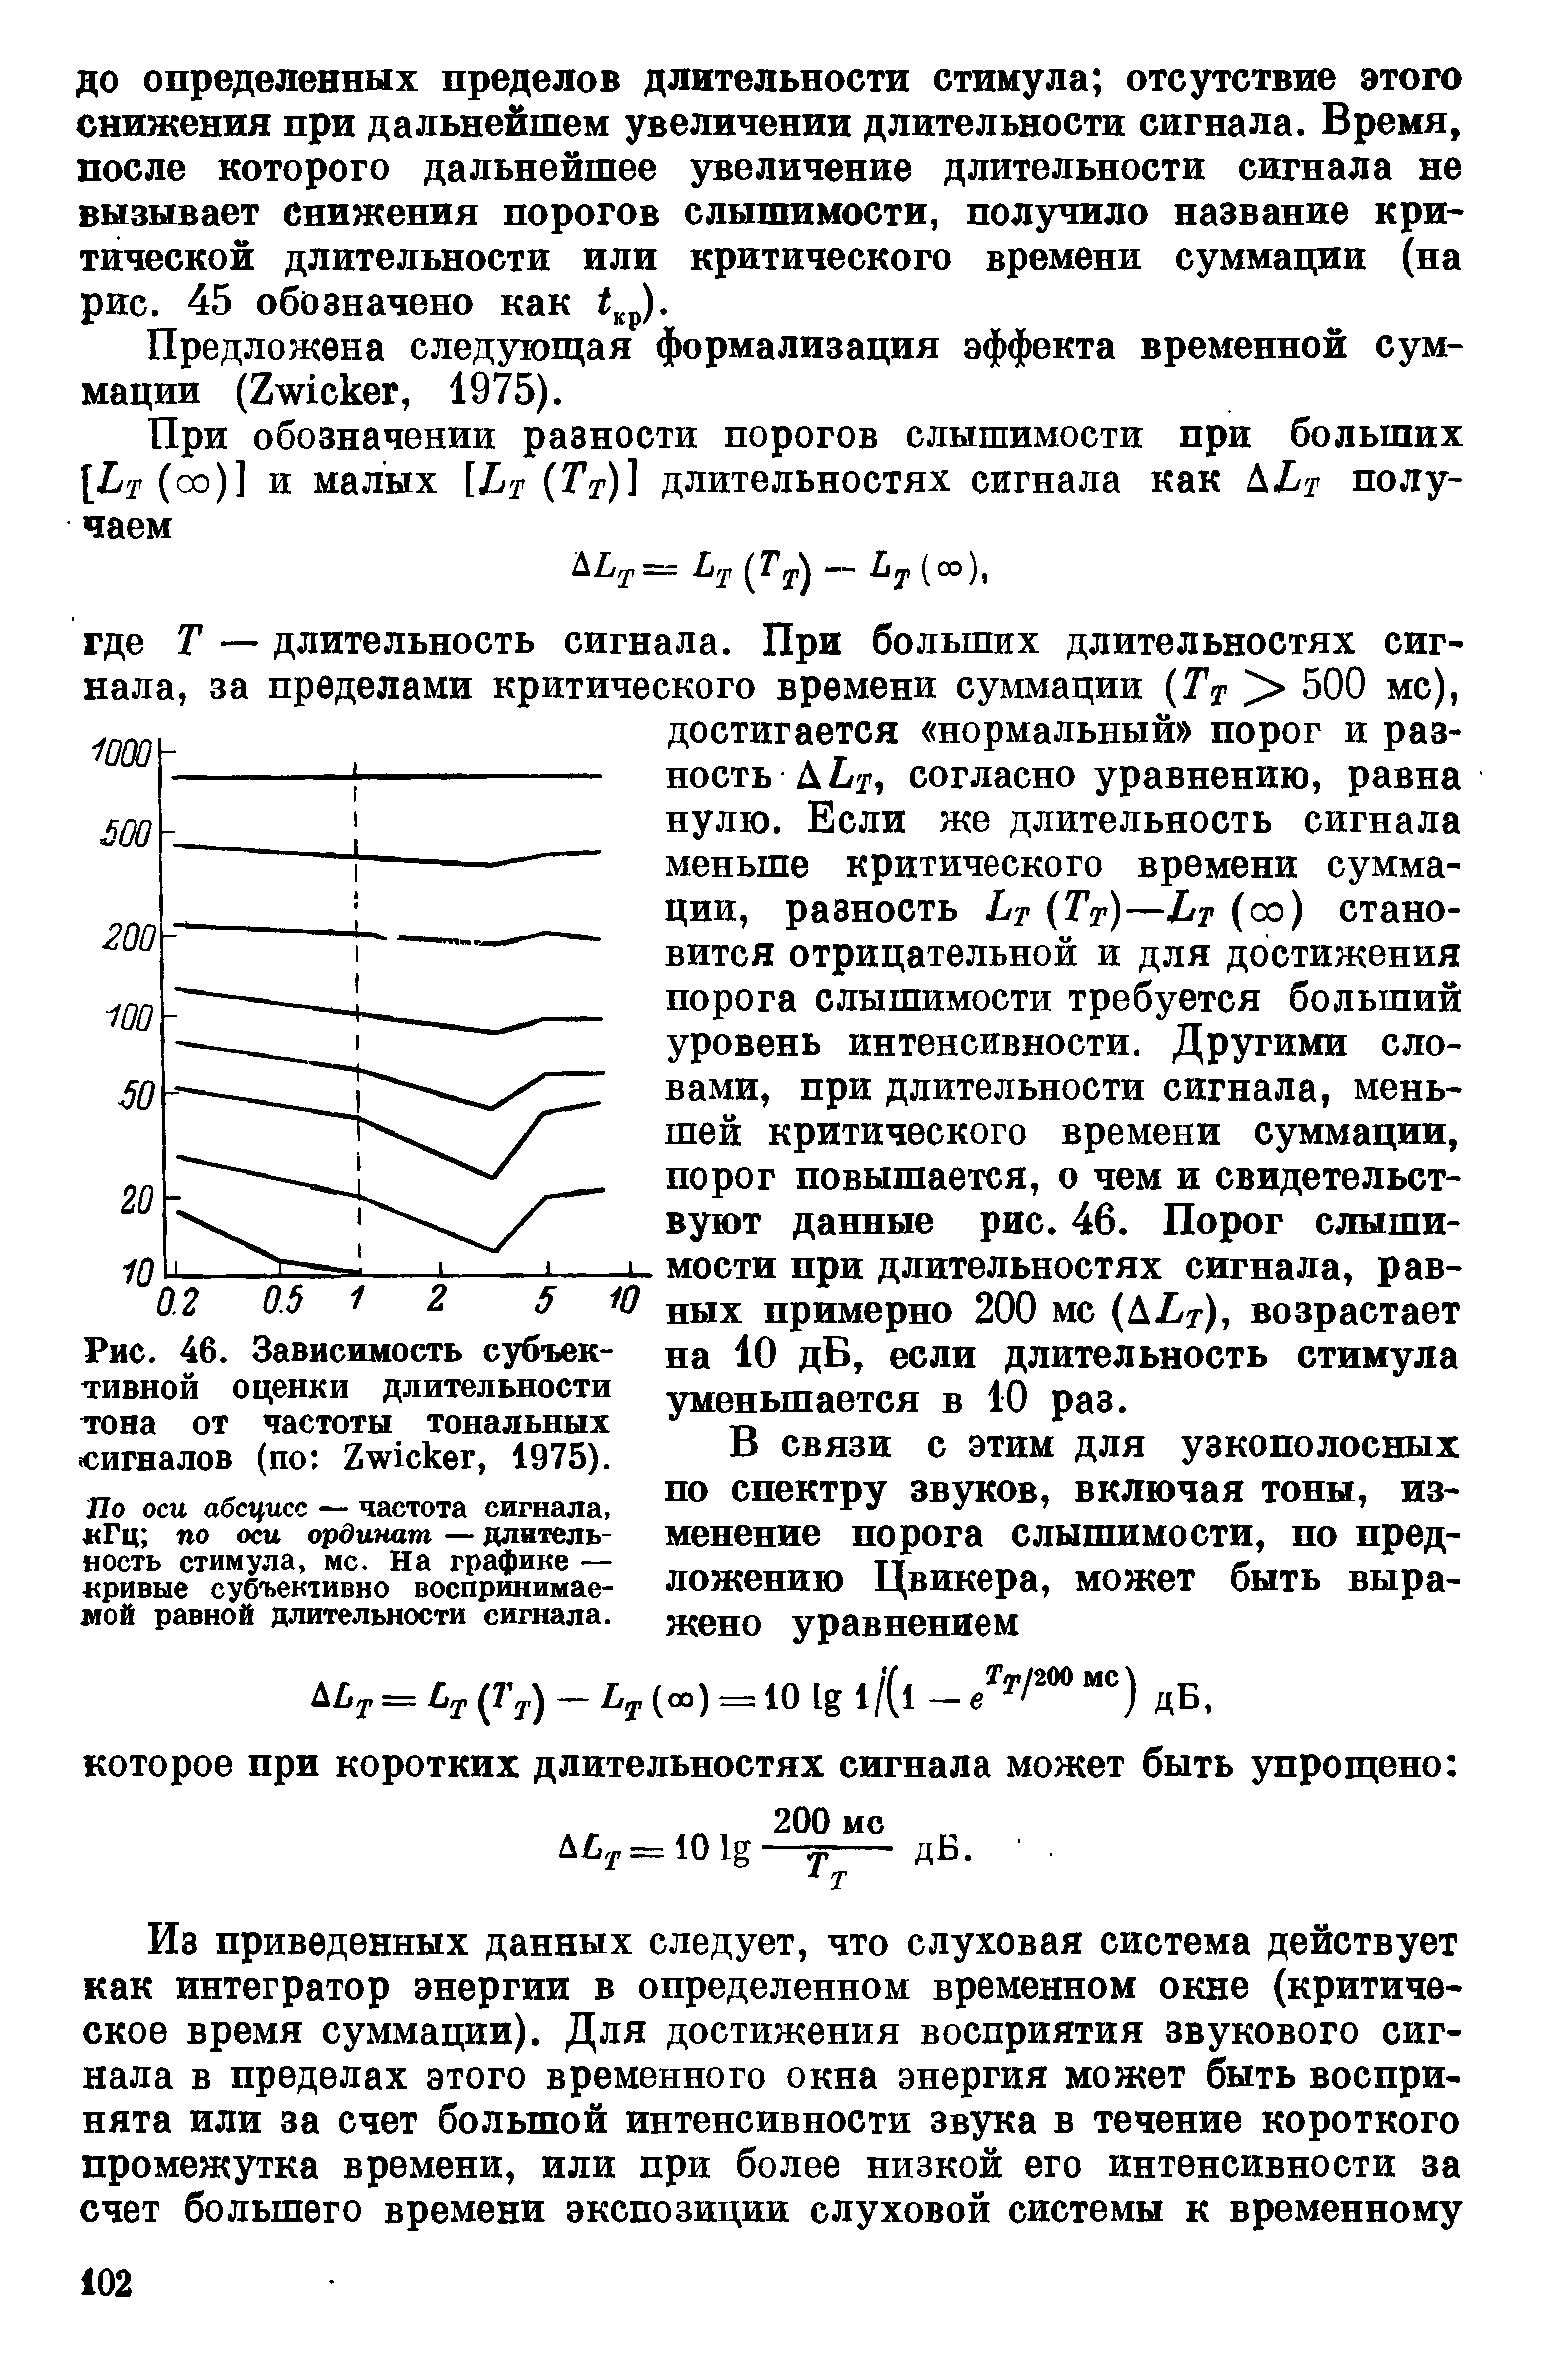 Рис. 46. Зависимость субъективной оценки длительности тона от частоты тональных сигналов (по Z , 1975).